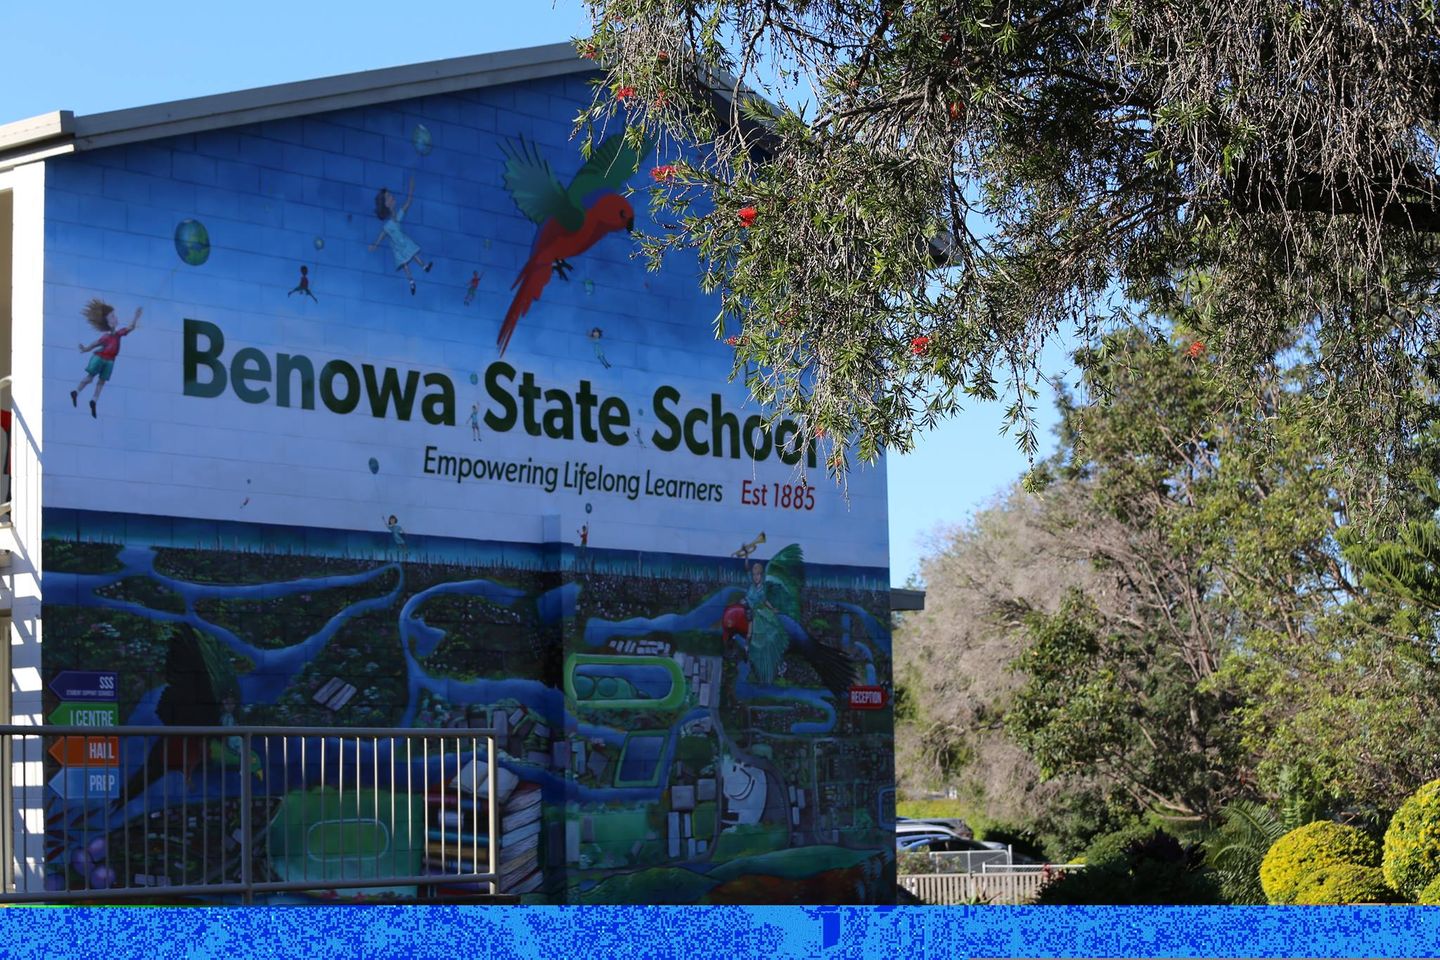 Benowa State School